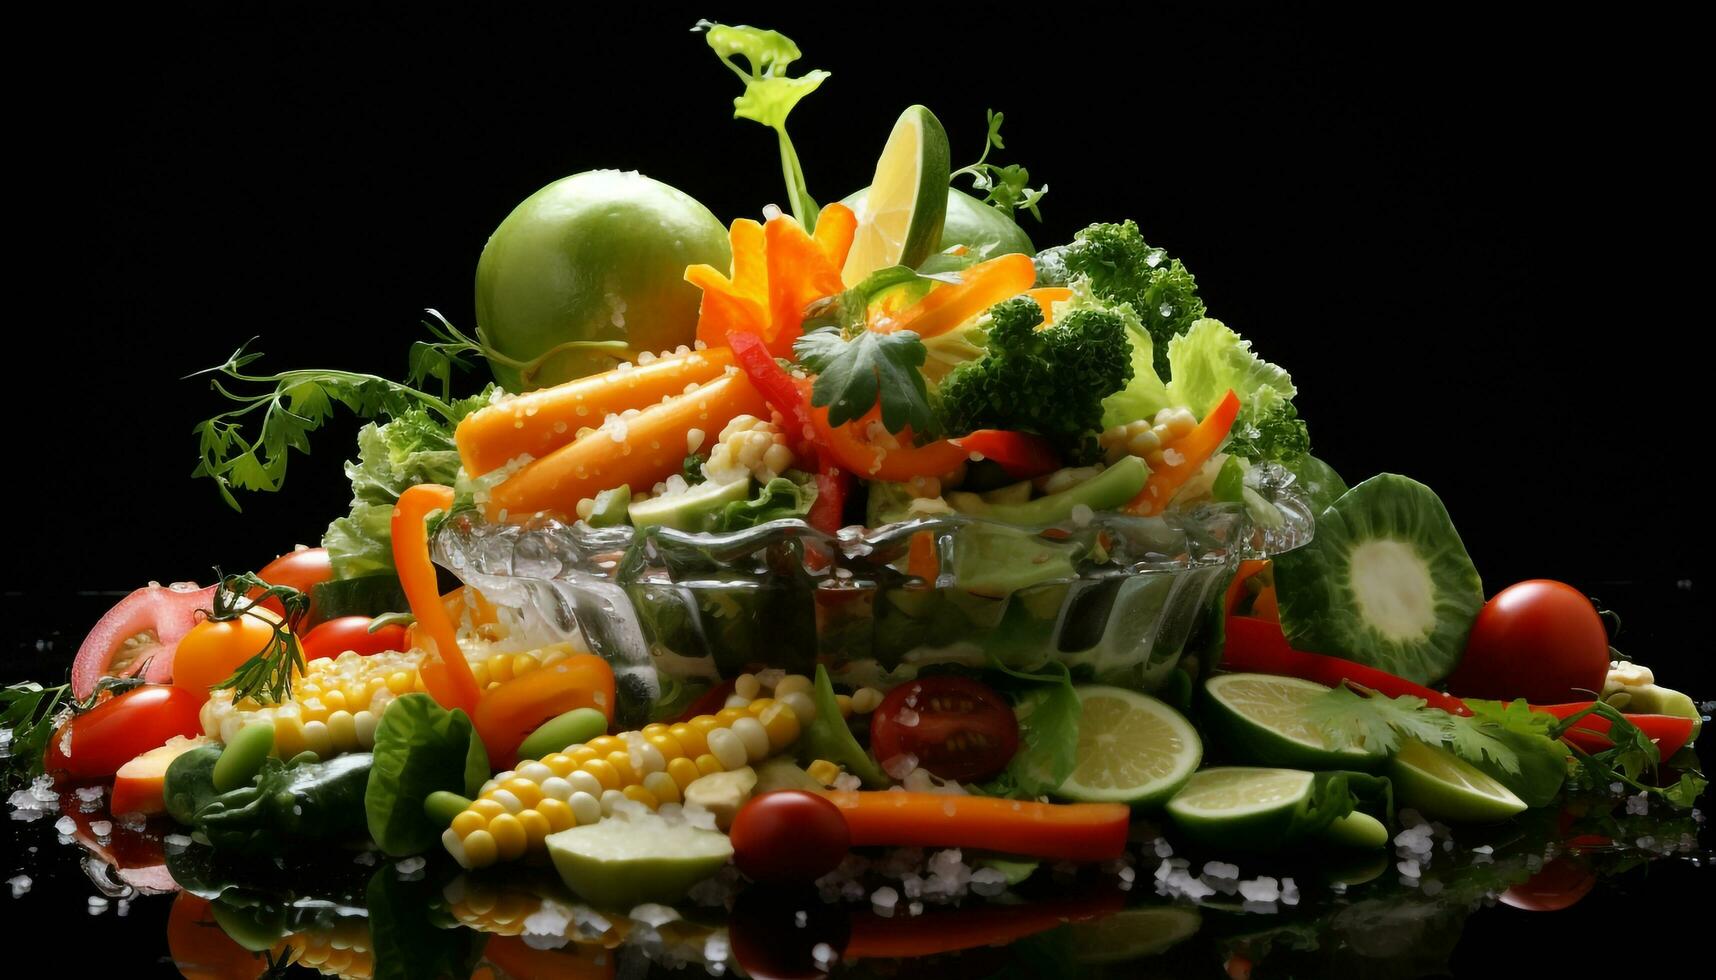 ensalada mezcla vegetales foto